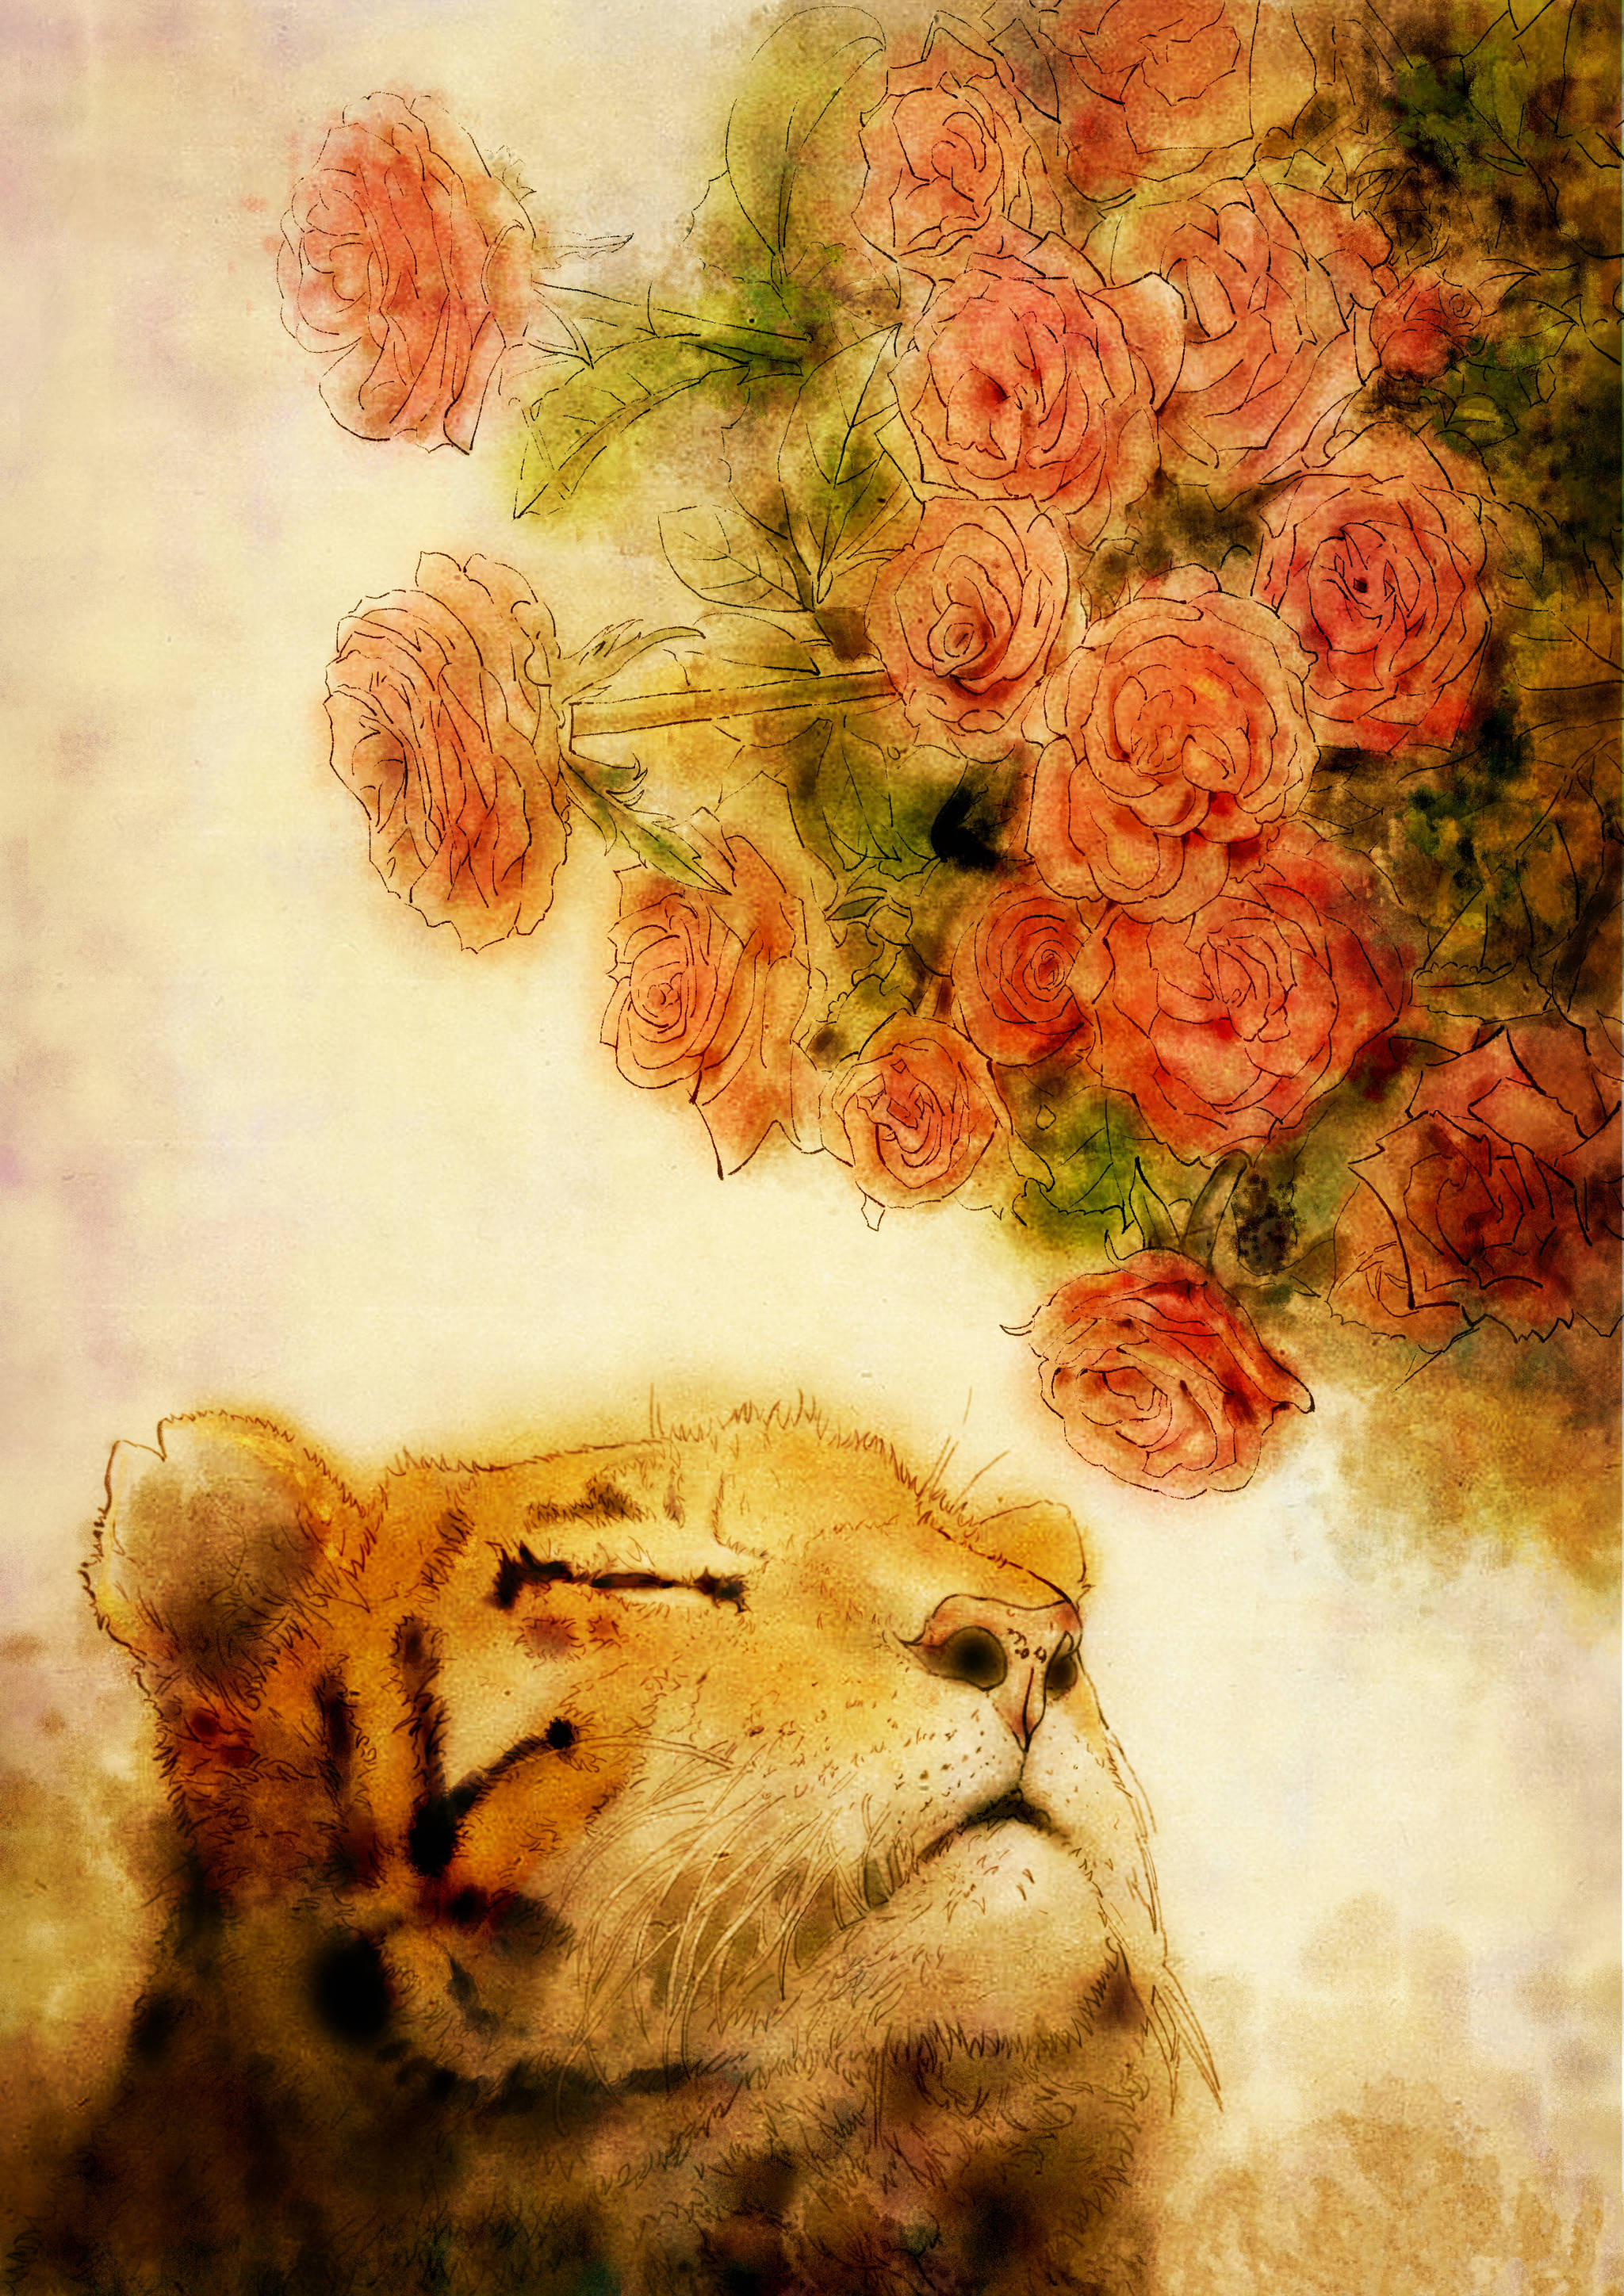 "心有猛虎,细嗅蔷薇,是英国诗人西格夫里·萨松代表作《于我,过去